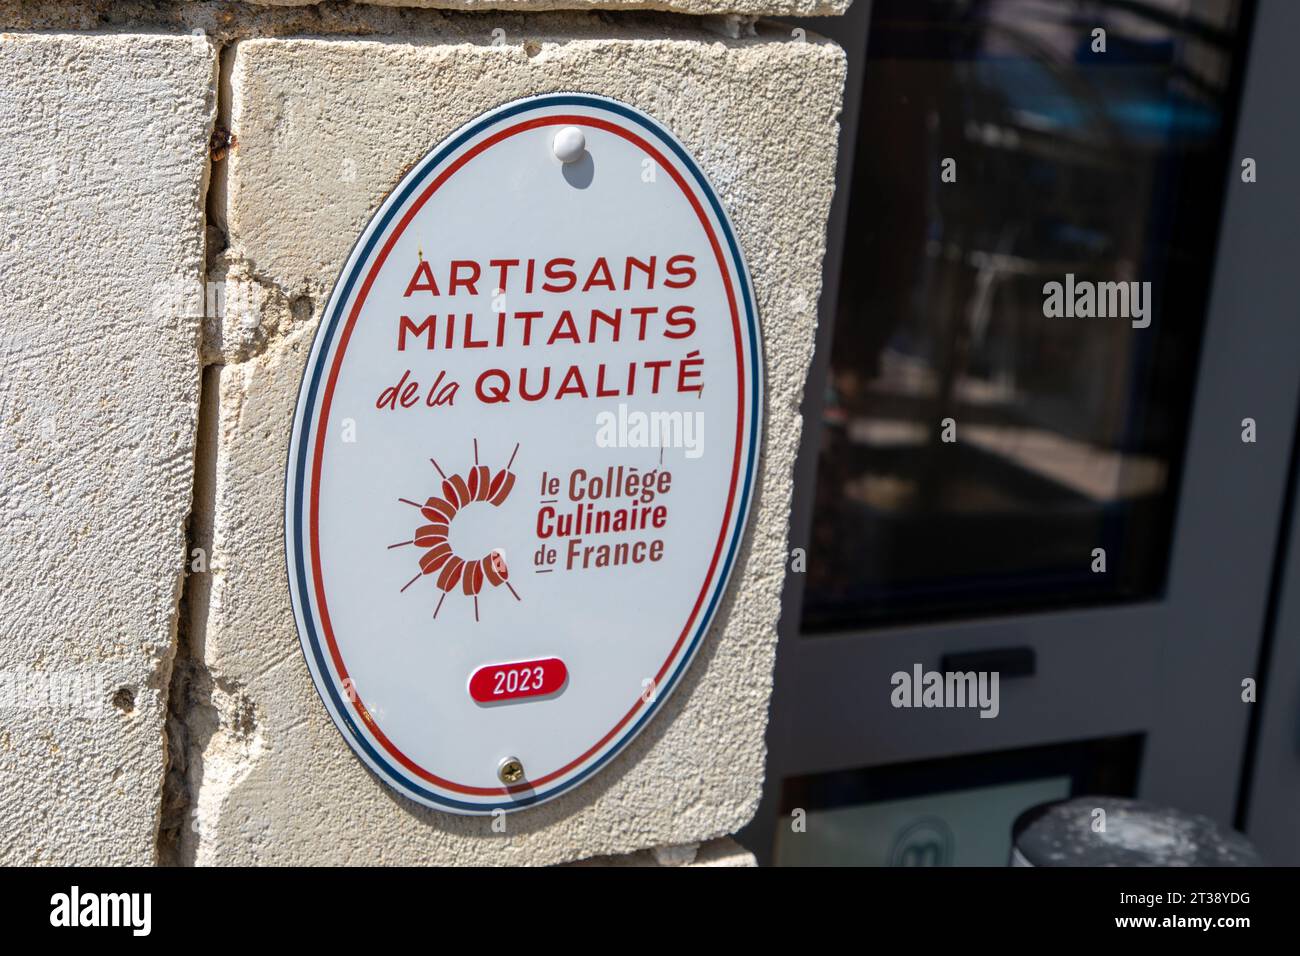 Bordeaux , France - 10 19 2023 : artisans militants de la Qualite 2023 college culinaire de france logo text and sign brand label of French artisan pr Stock Photo